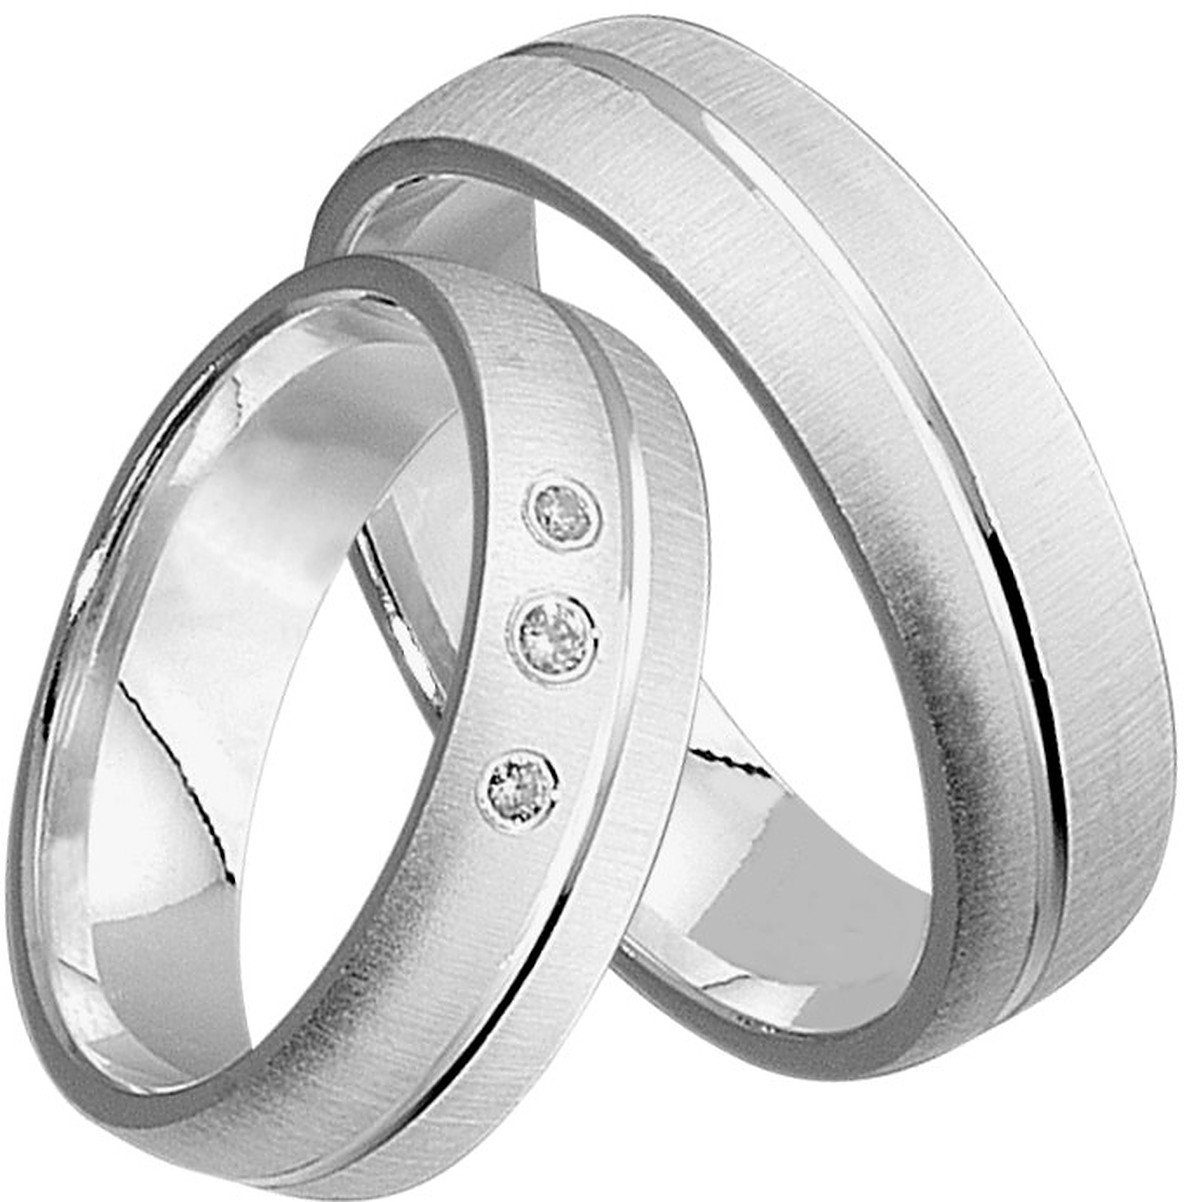 Trauringe123 Trauring Hochzeitsringe Verlobungsringe Trauringe J50 925, Diamant, Eheringe echten Partnerringe Silber mit